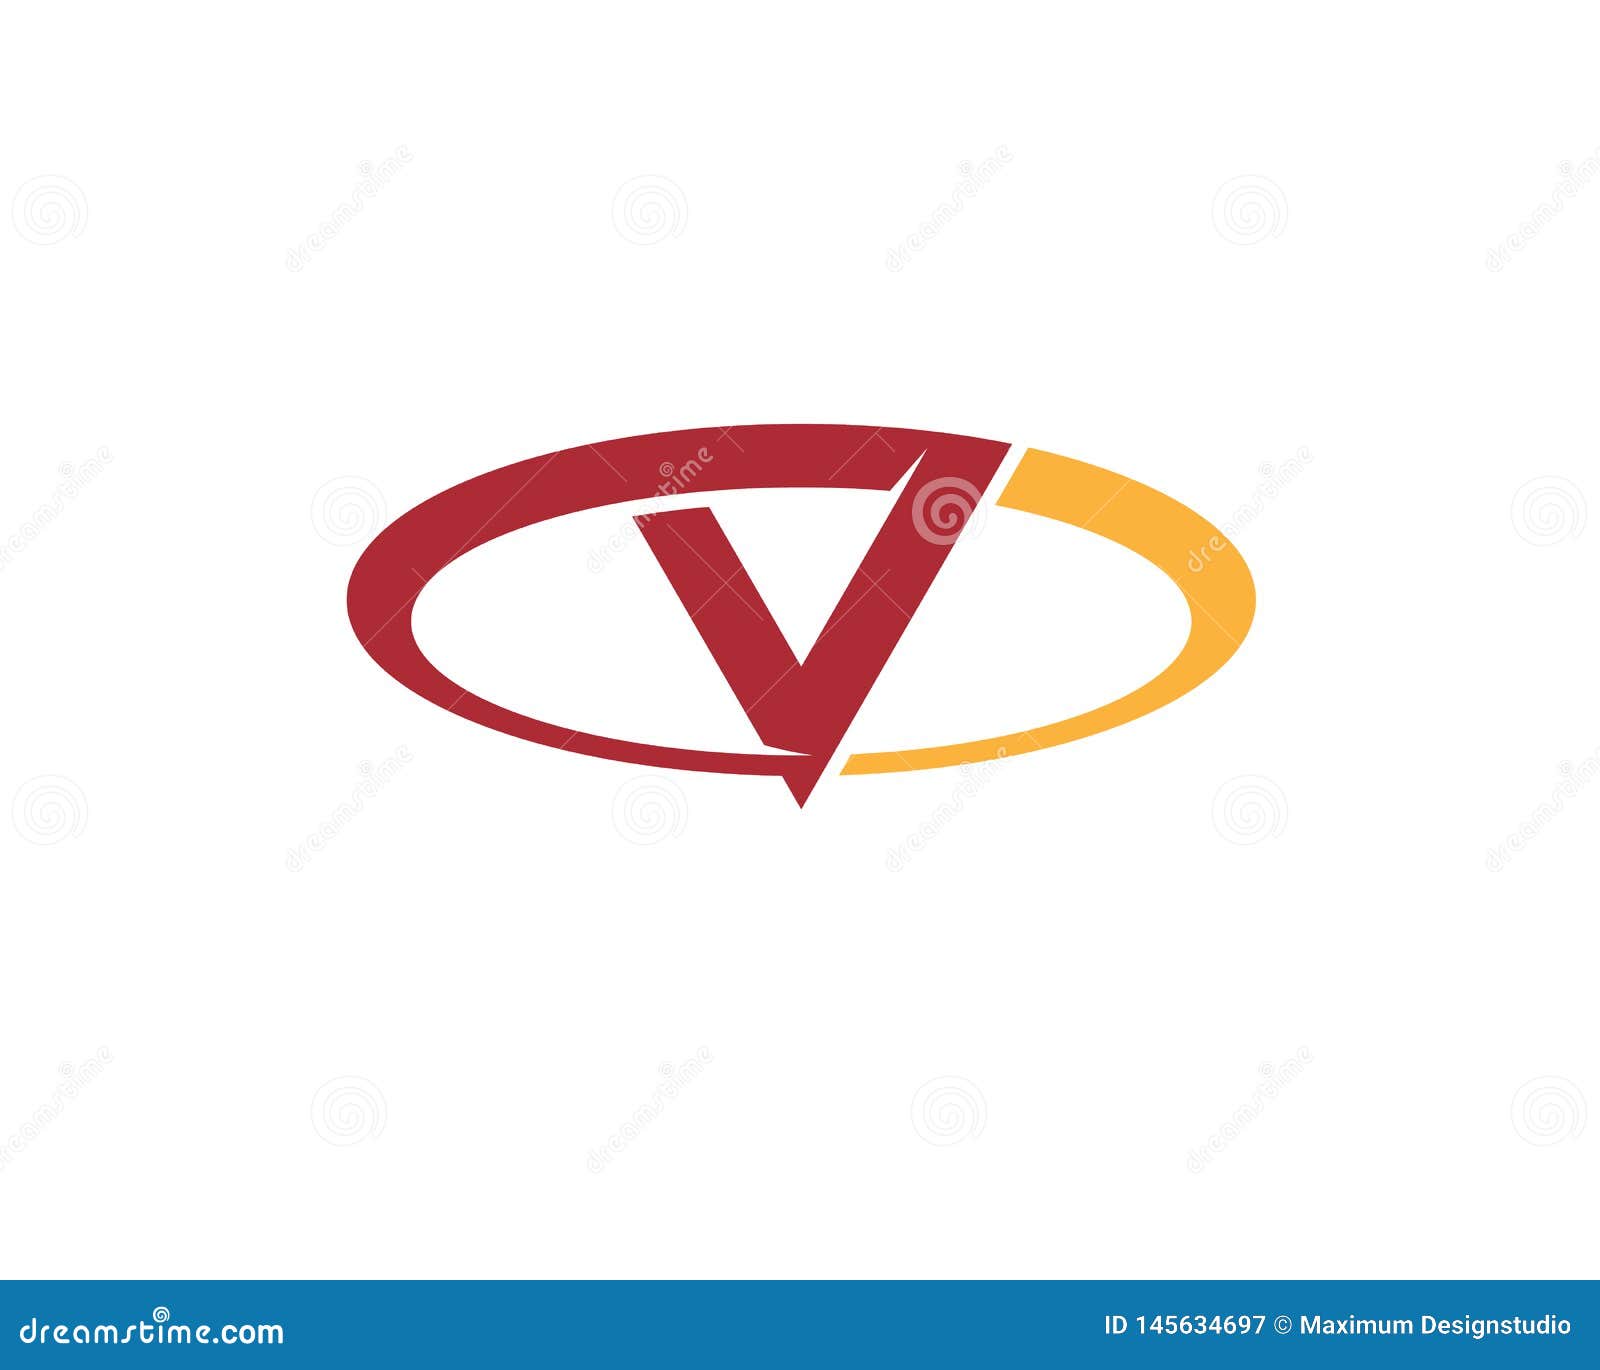 initial letter c v o forming an elipse anagram logo